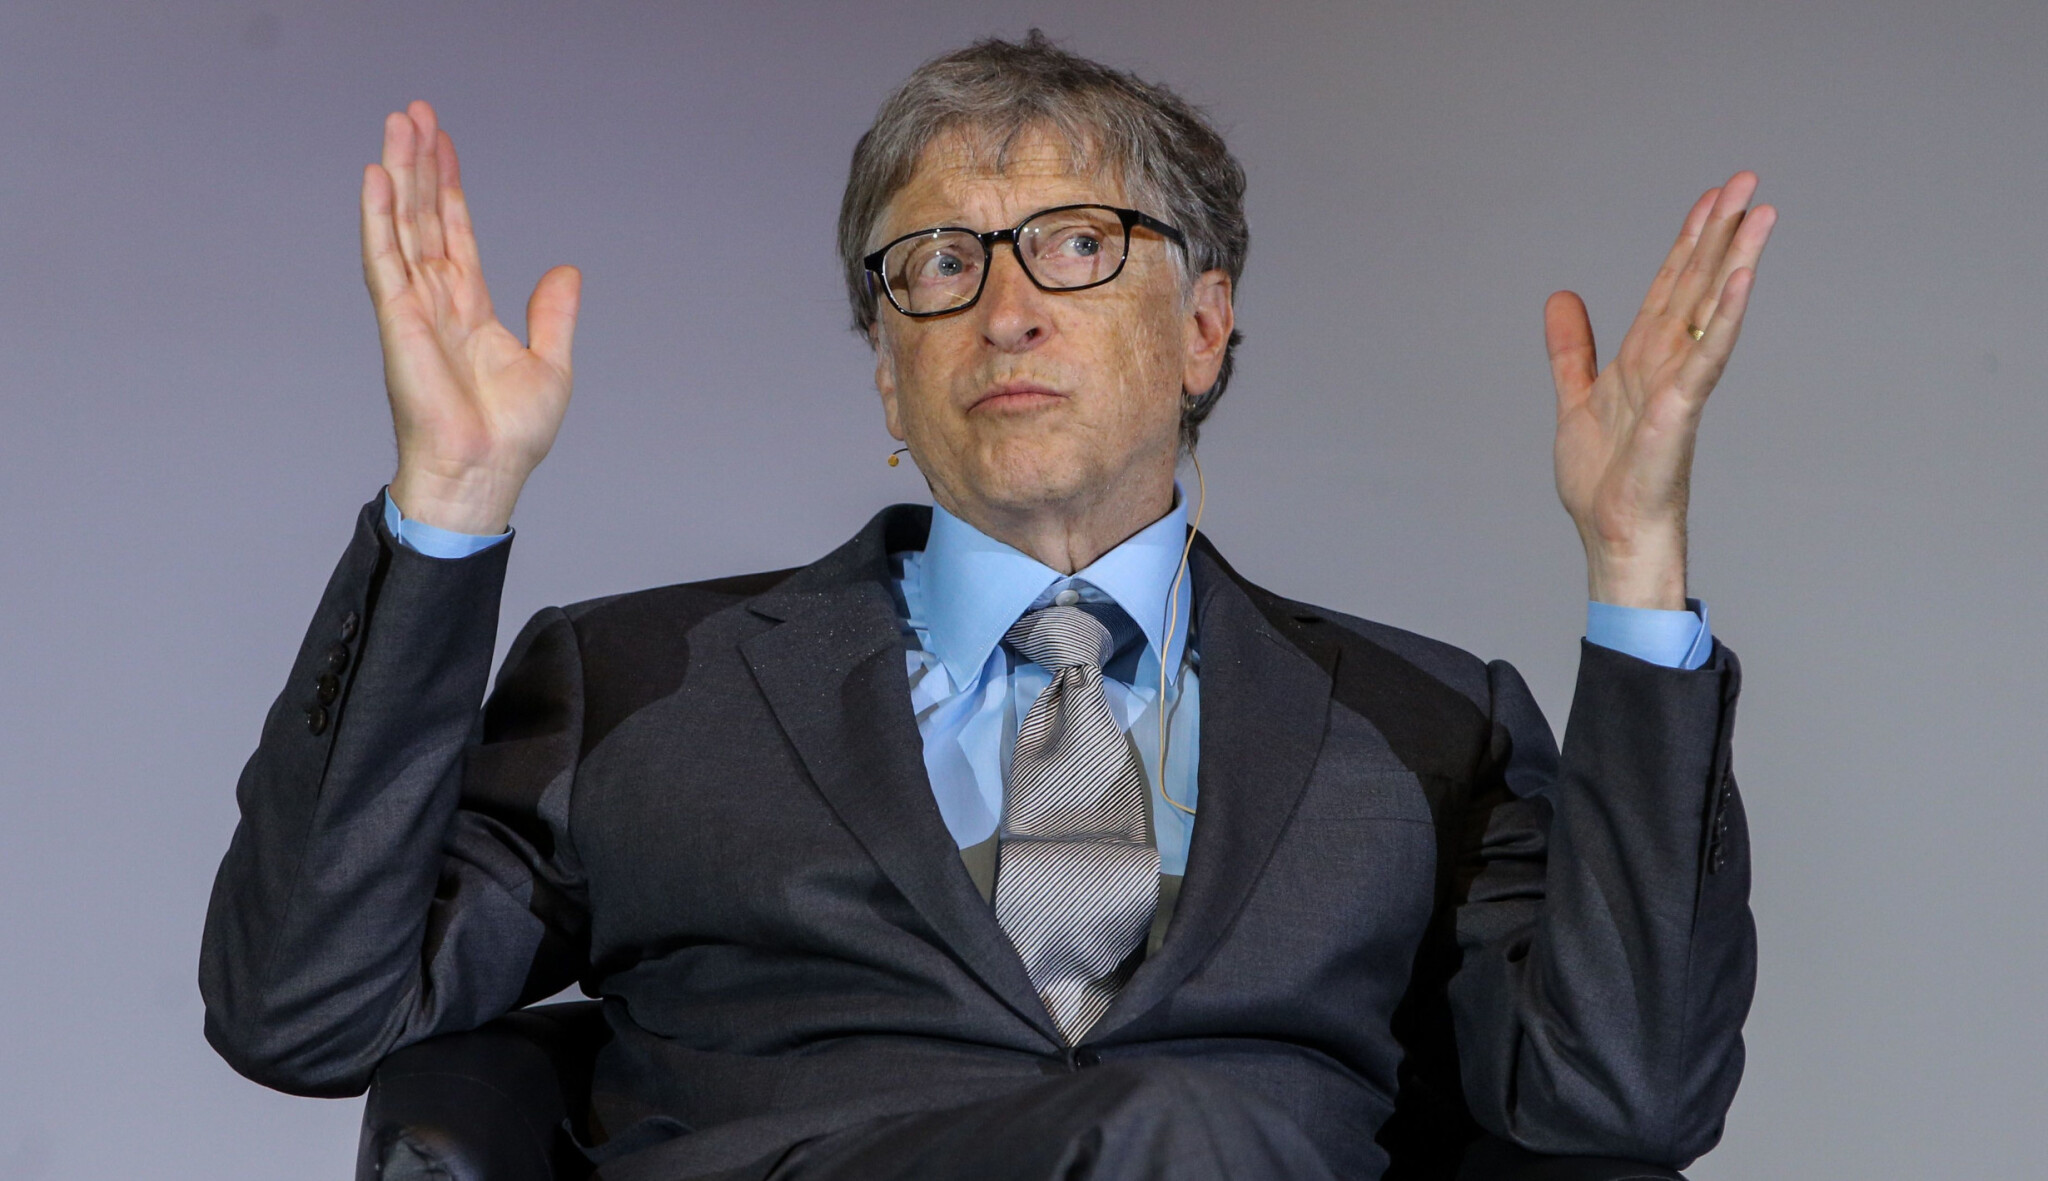 Až čtvrtý. Proč je Bill Gates v žebříčku nejbohatších Američanů nejníže za třicet let?